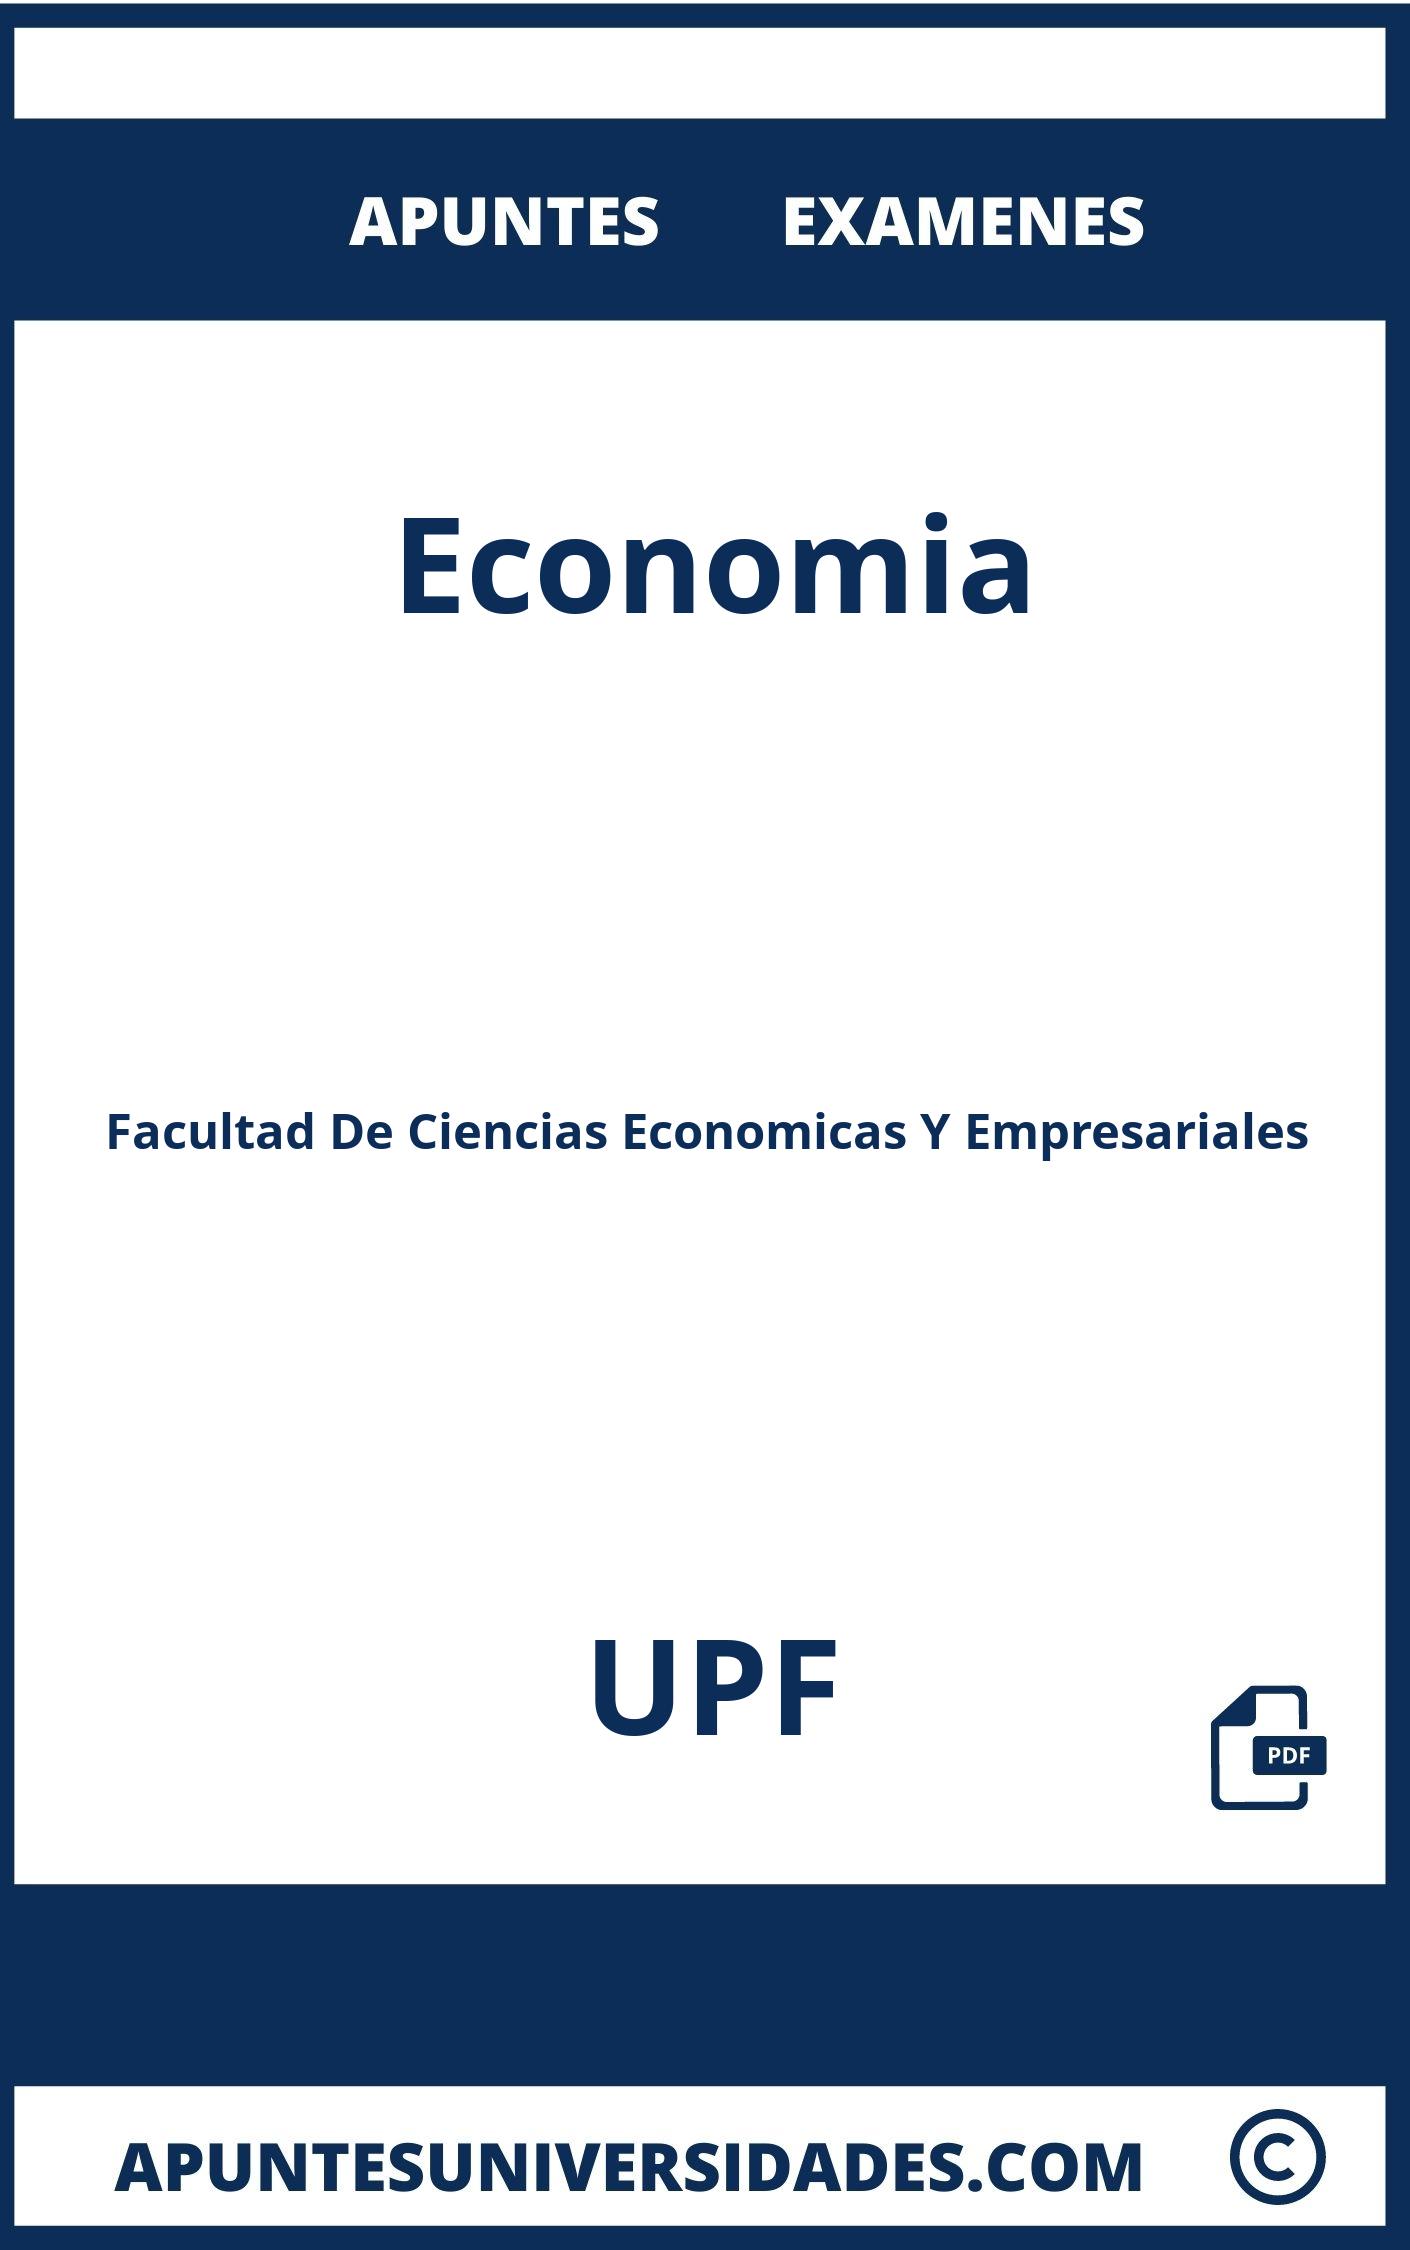 Examenes y Apuntes de Economia UPF